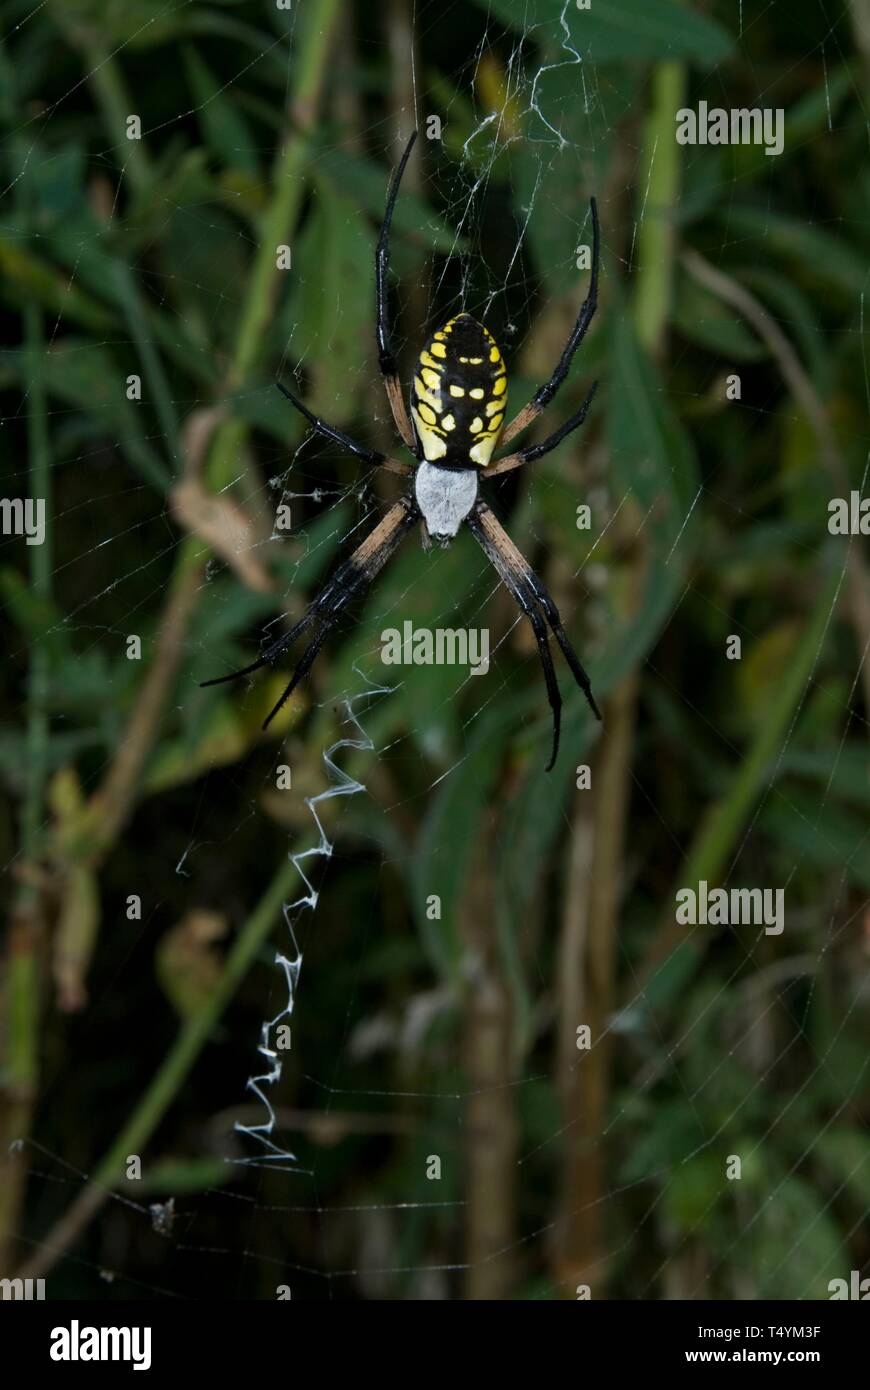 Black and Yellow Garden Spider, Argiope aurantia, Leavenworth, Kansas. Stock Photo